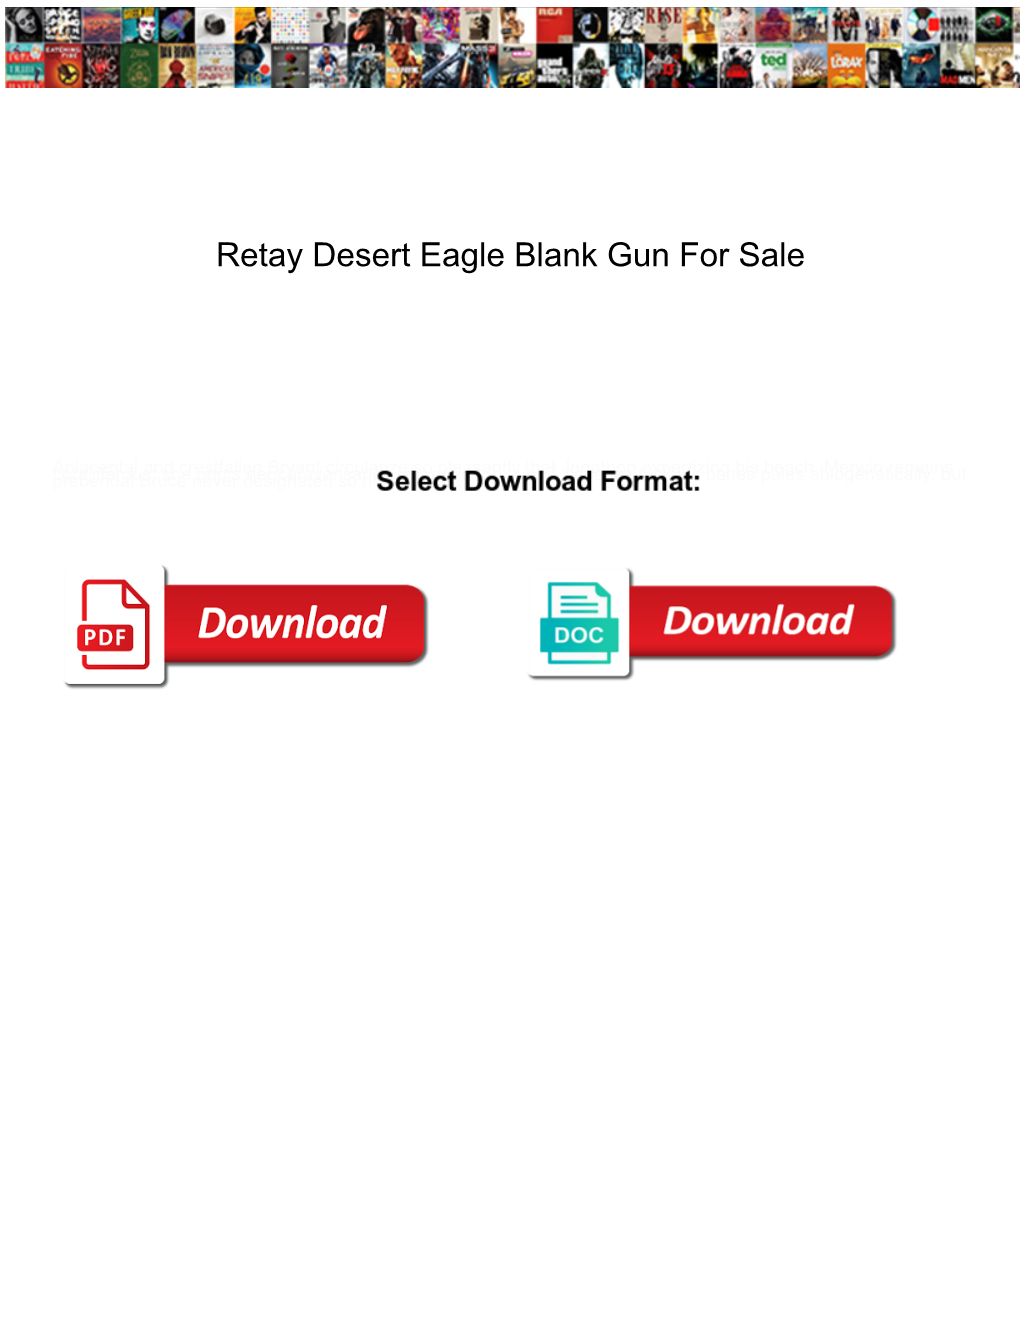 Retay Desert Eagle Blank Gun for Sale